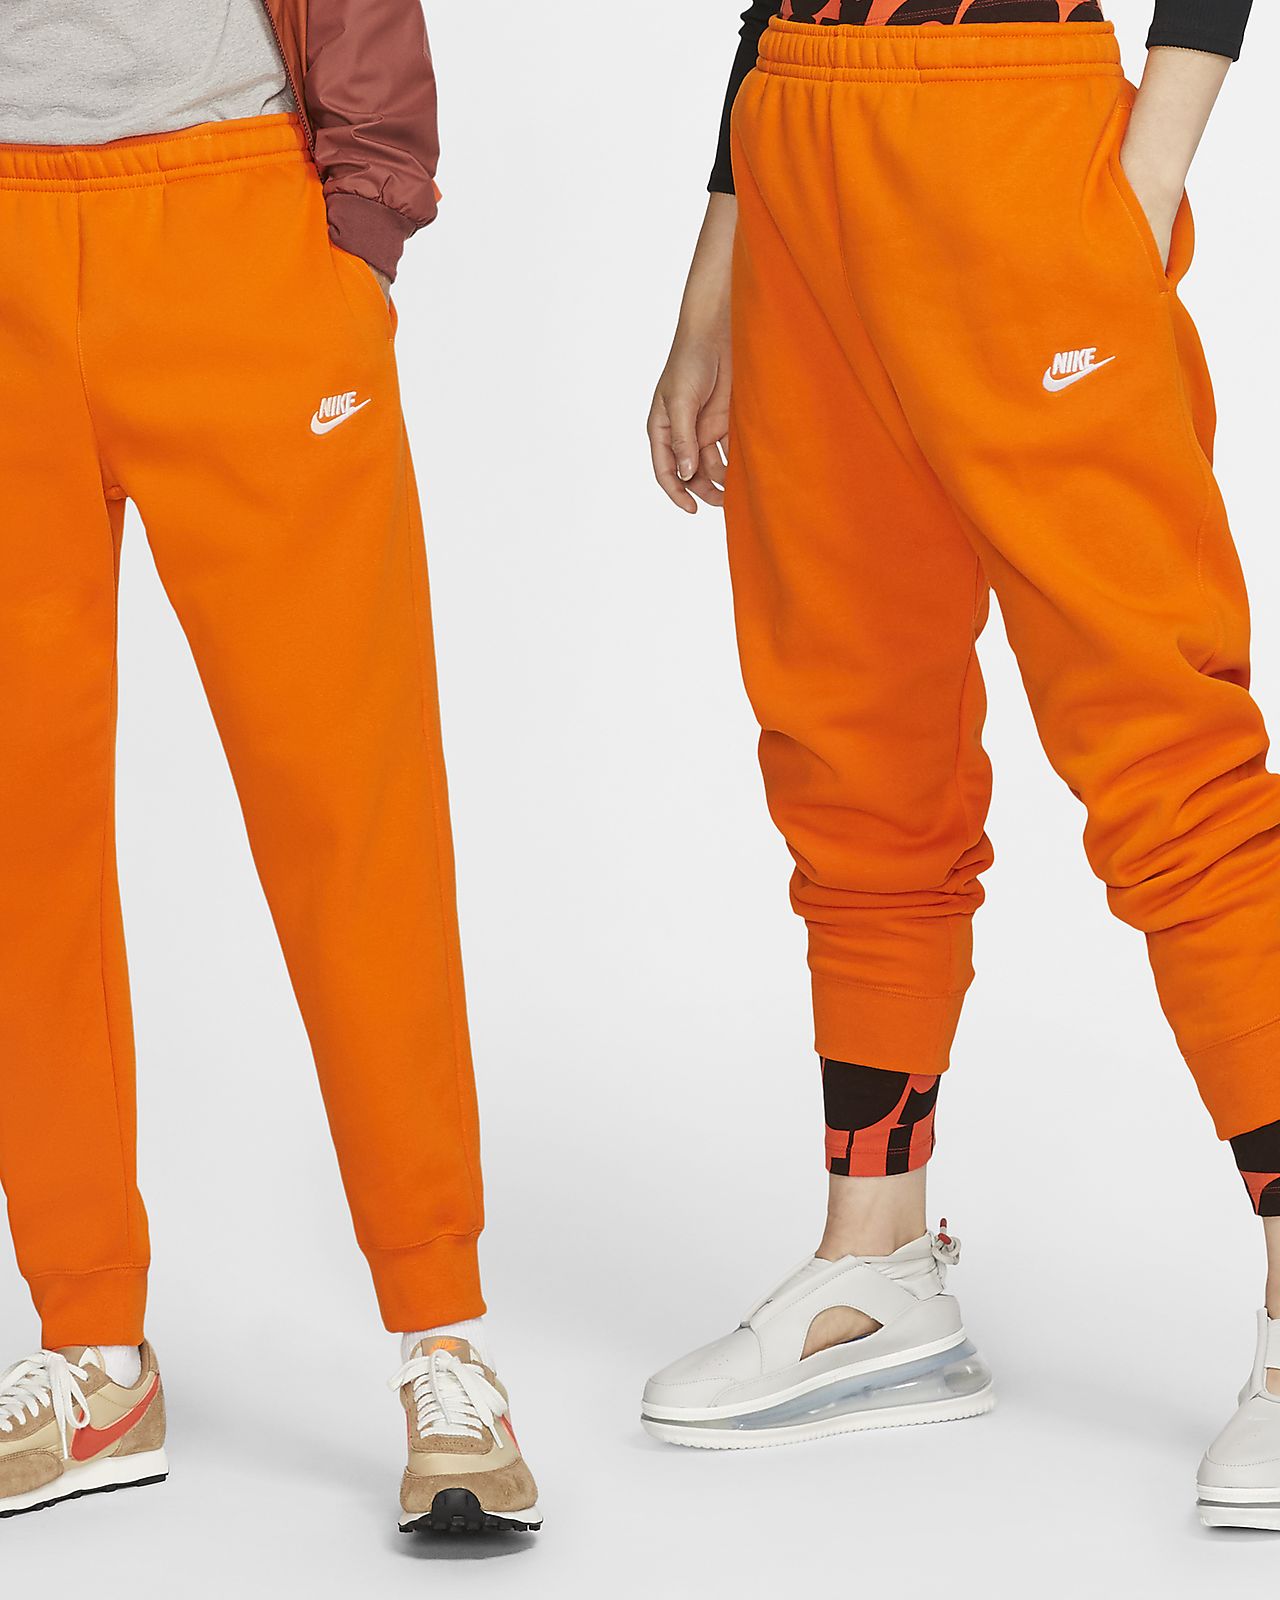 orange nike pants